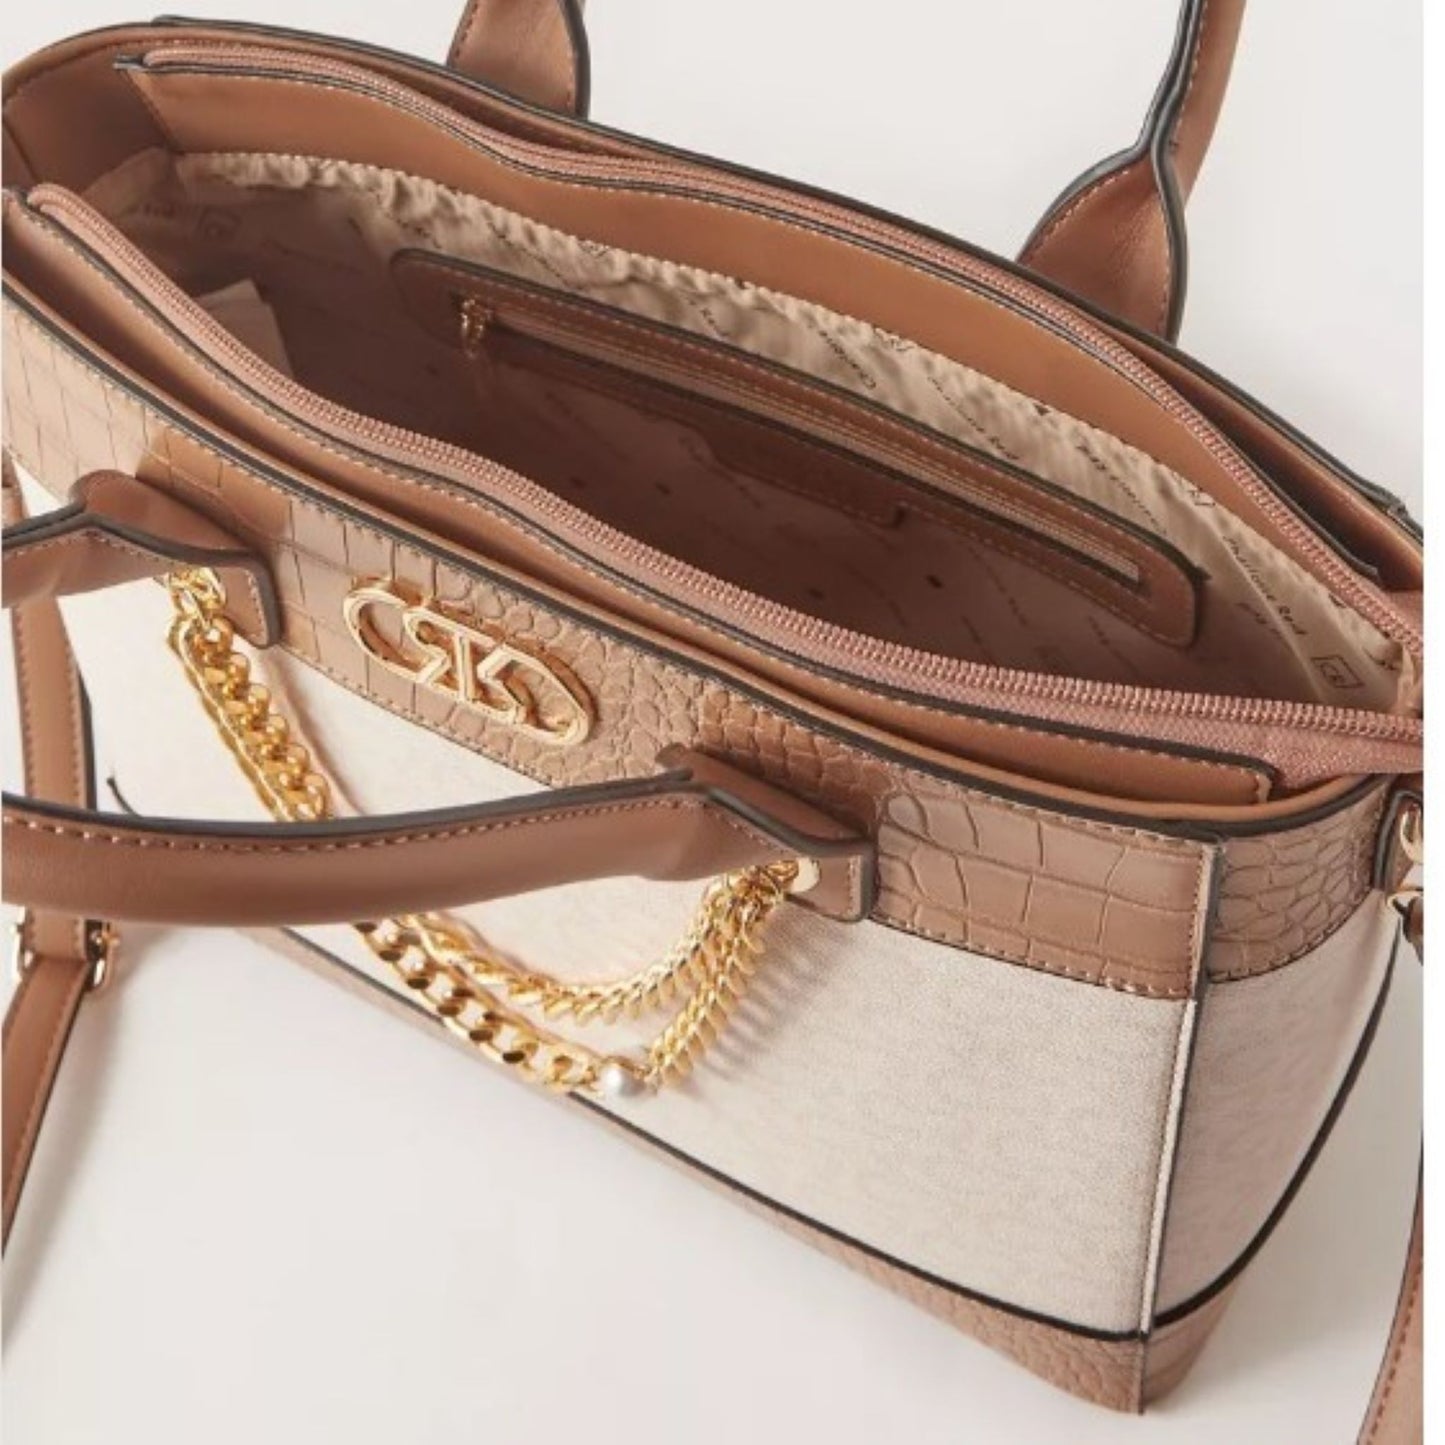 米色和棕褐色紋理頂部提手挎包手提包，帶鏈條裝飾